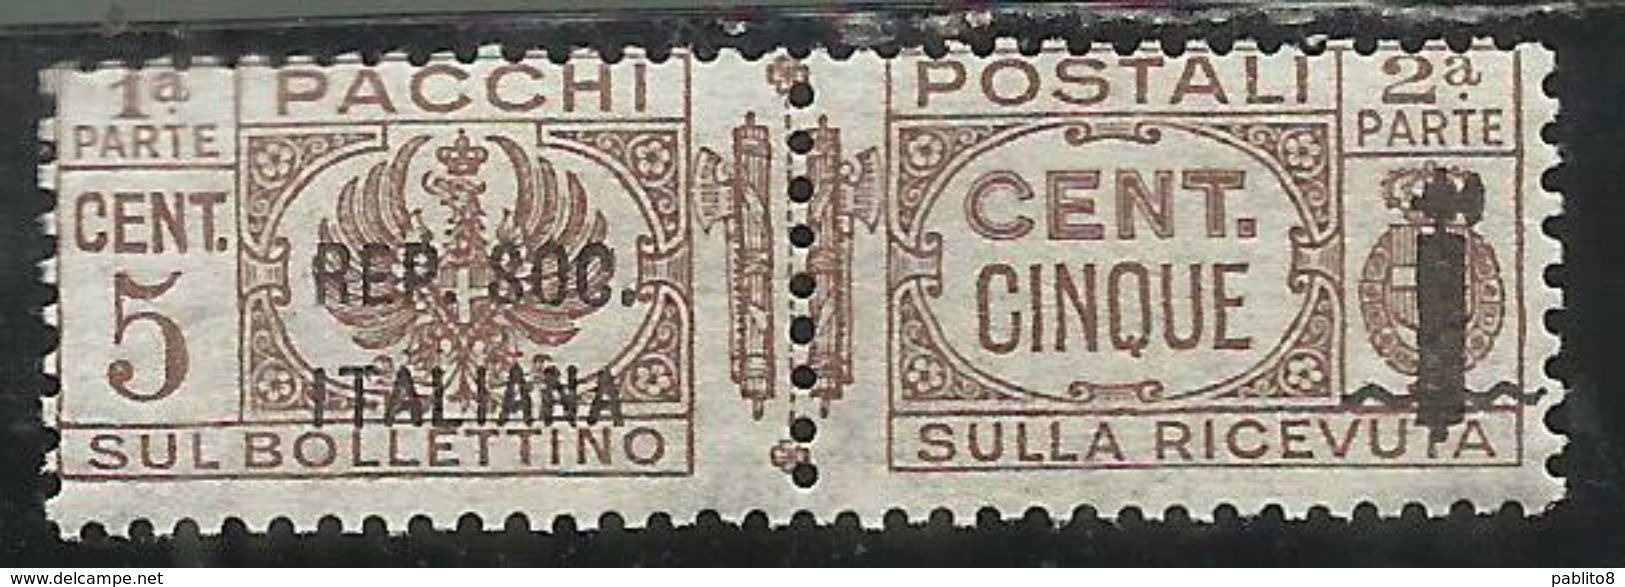 ITALIA REGNO ITALY KINGDOM 1944 RSI REPUBBLICA SOCIALE PACCHI FASCIETTO CENT. 5c MNH - Colis-postaux